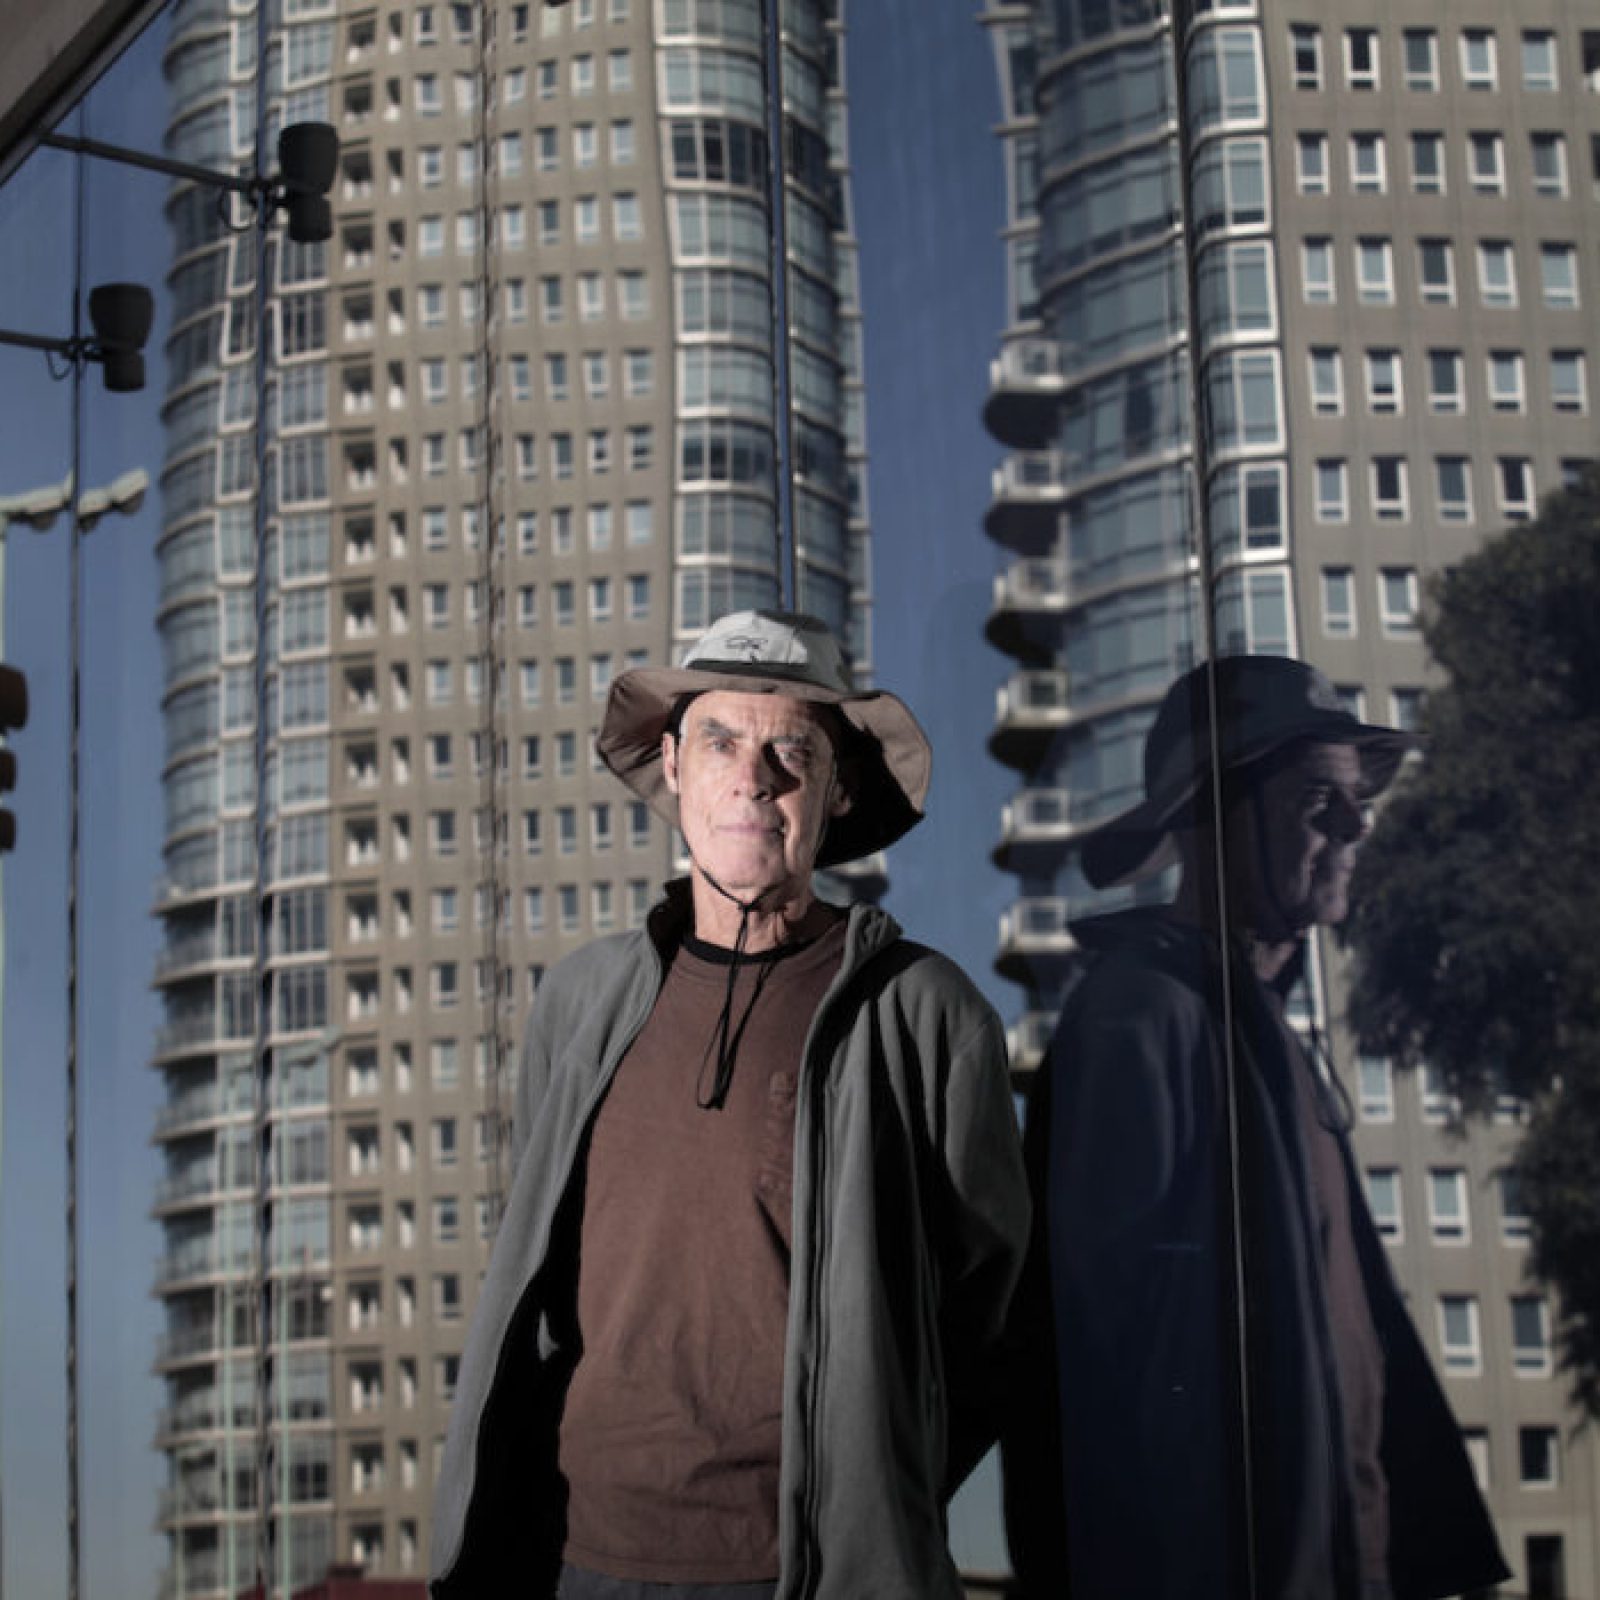 Richard Long frente a la fachada de Faena Arts Center, Buenos Aires, junio 2014. Foto: María Soledad Aznarez. Cortesía: Faena Arts Center